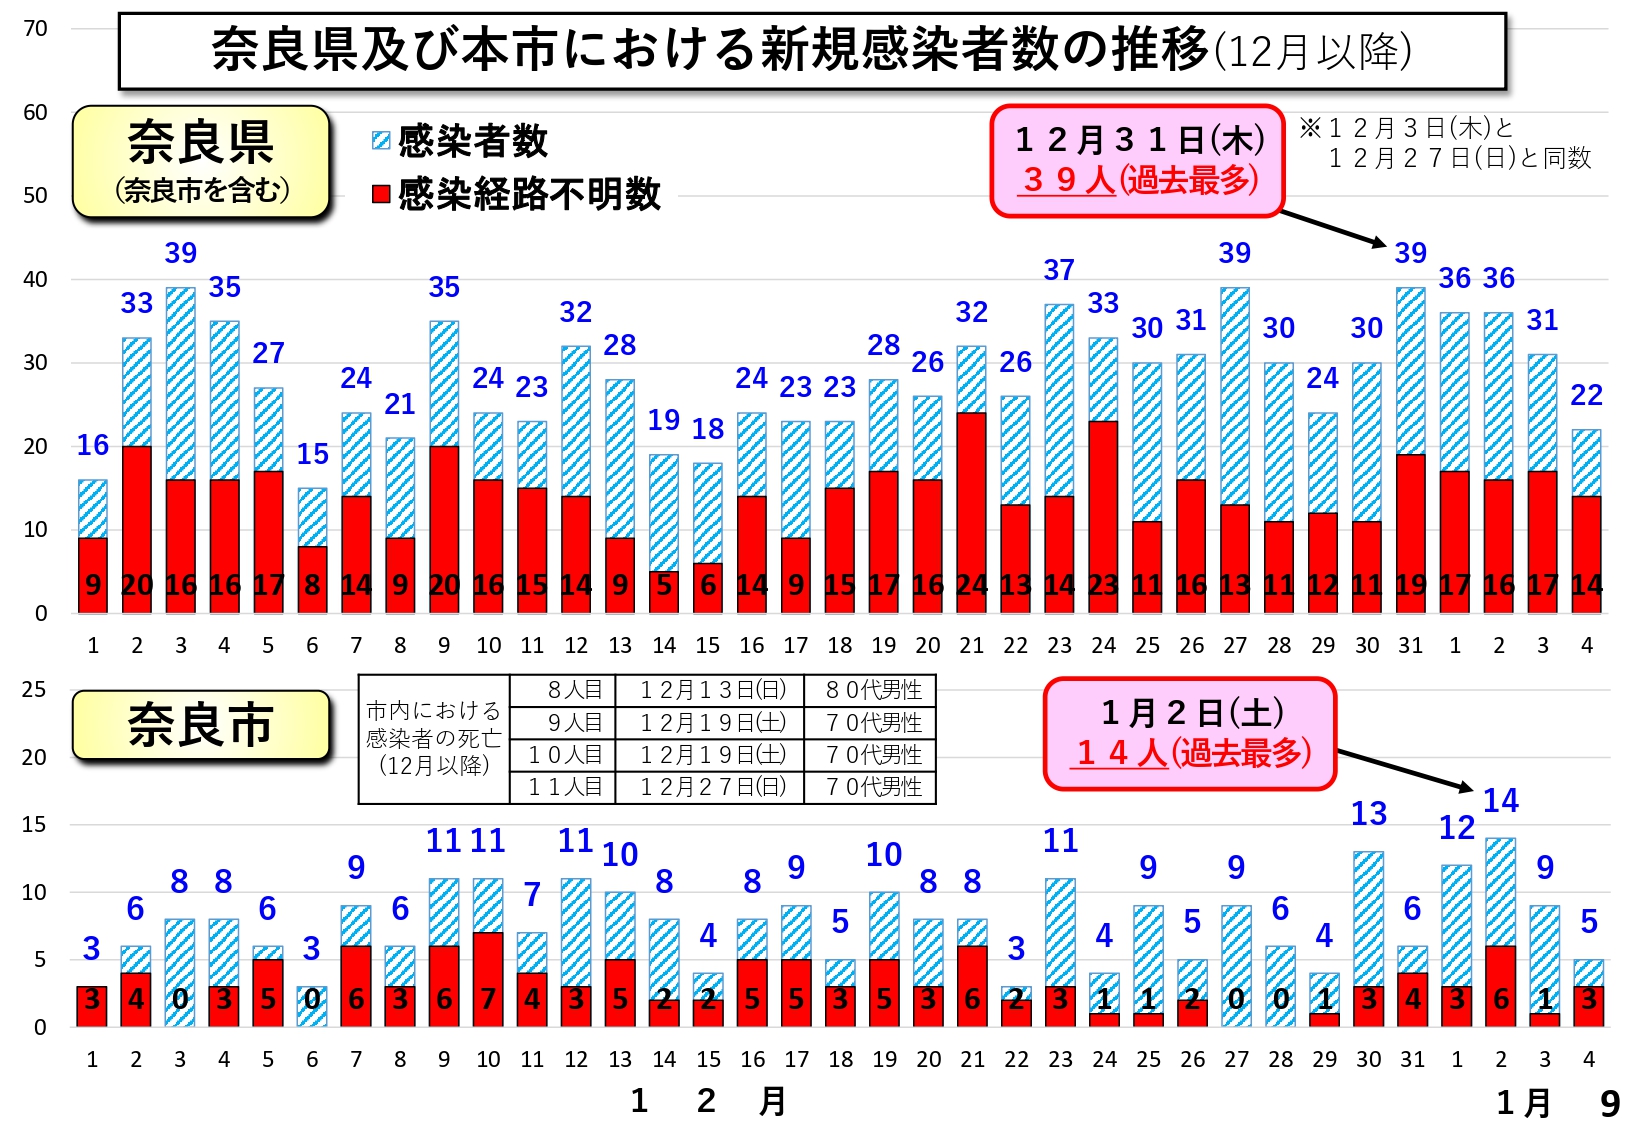 奈良県及び本市における新規感染者数の推移（12月以降）